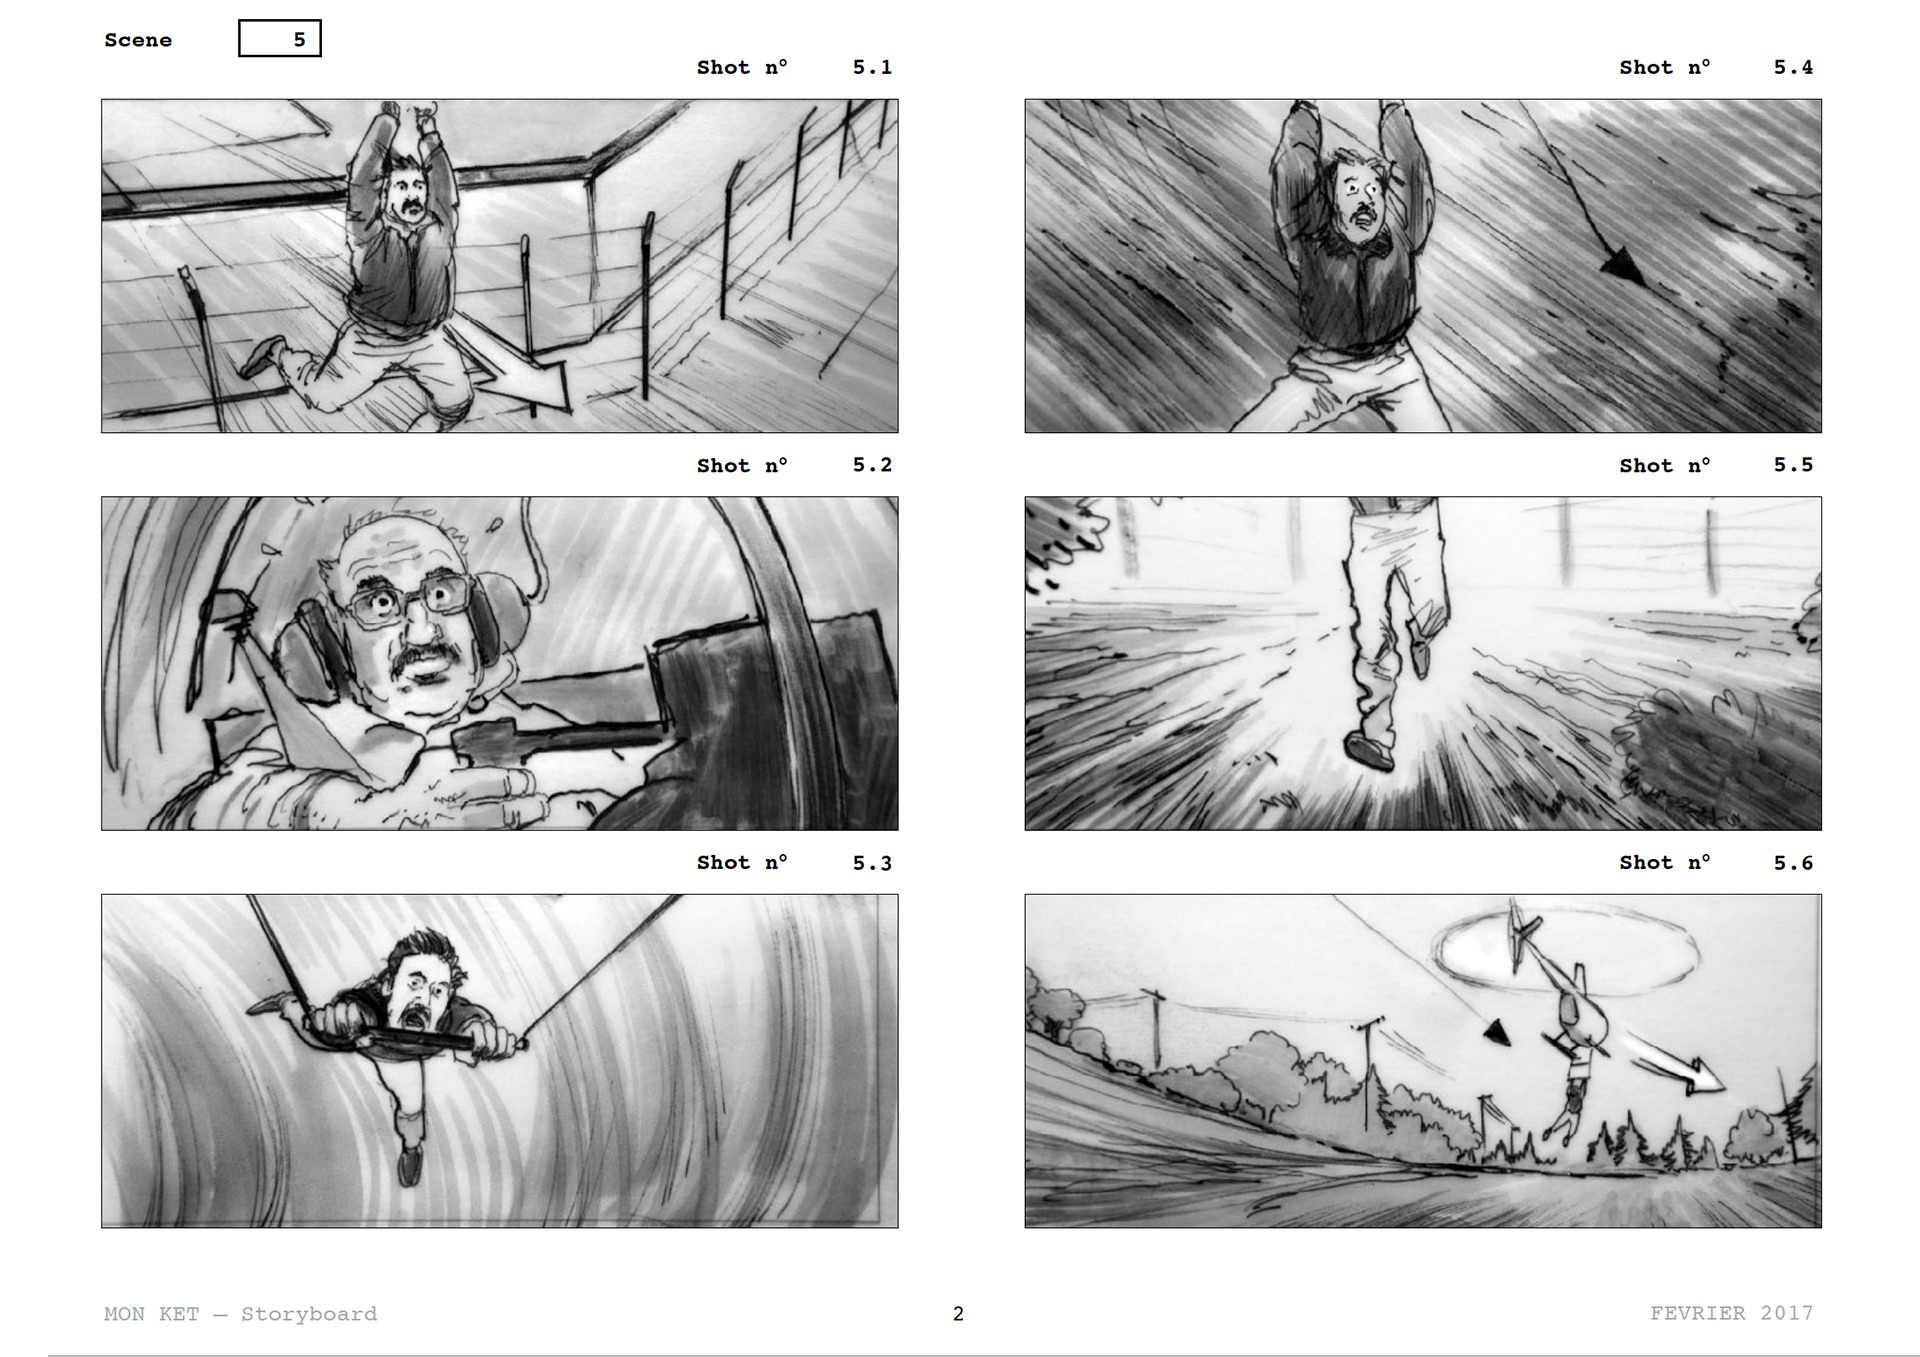 =Mon Ket — Storyboard, scènes d'évasion, page 1